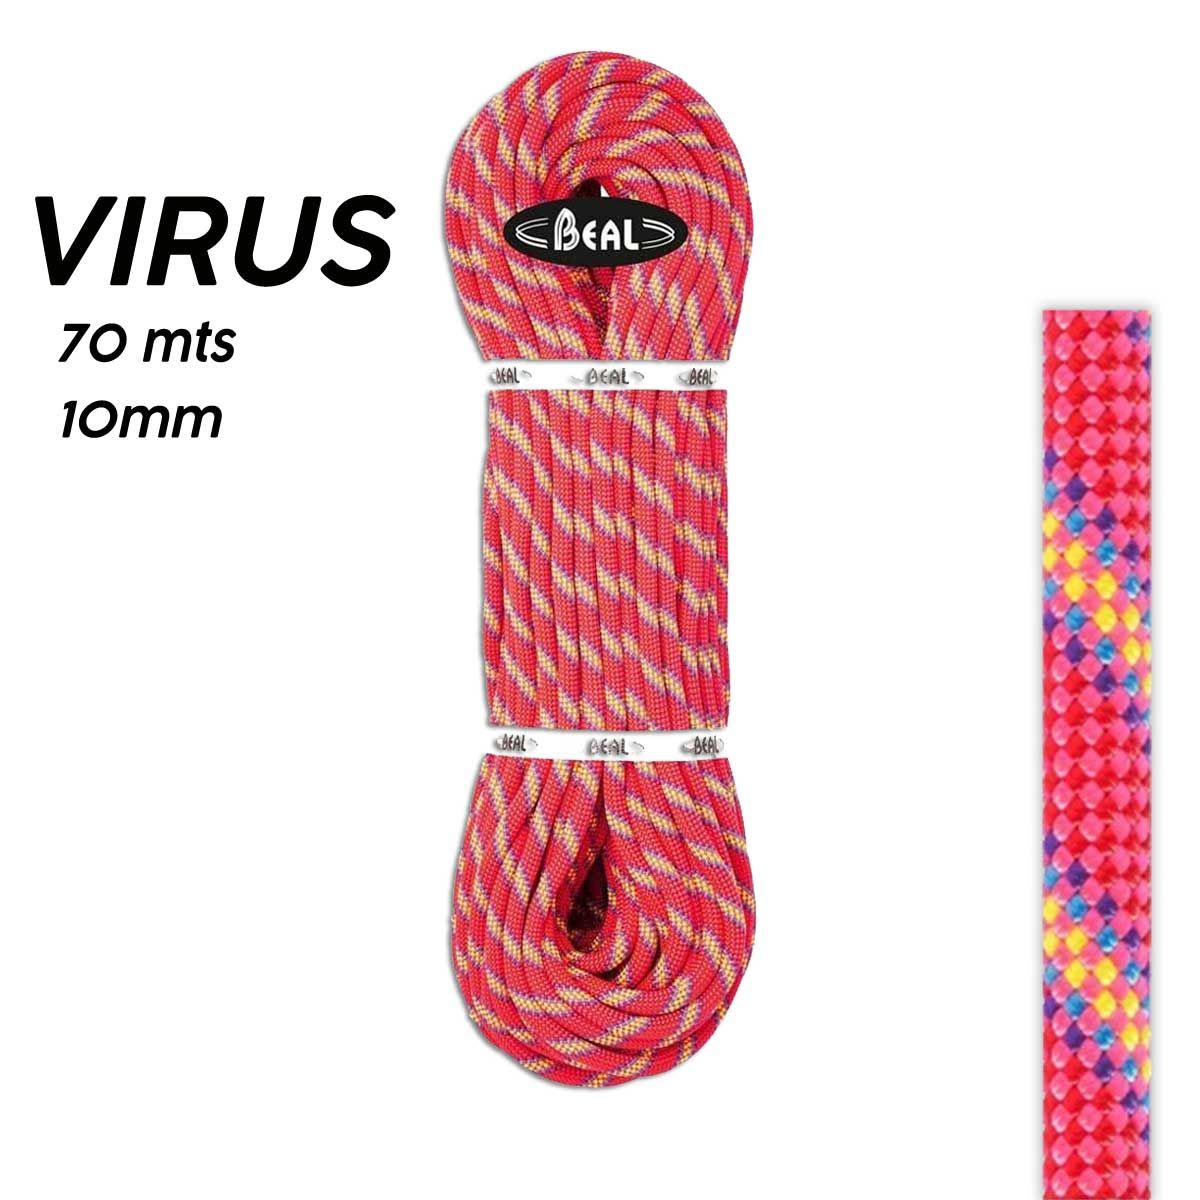 Cuerda Dinámica Virus 10 mm 70 mts - Beal ESCALADA Cuerdas y Cordinos  Cuerdas Dinámicas